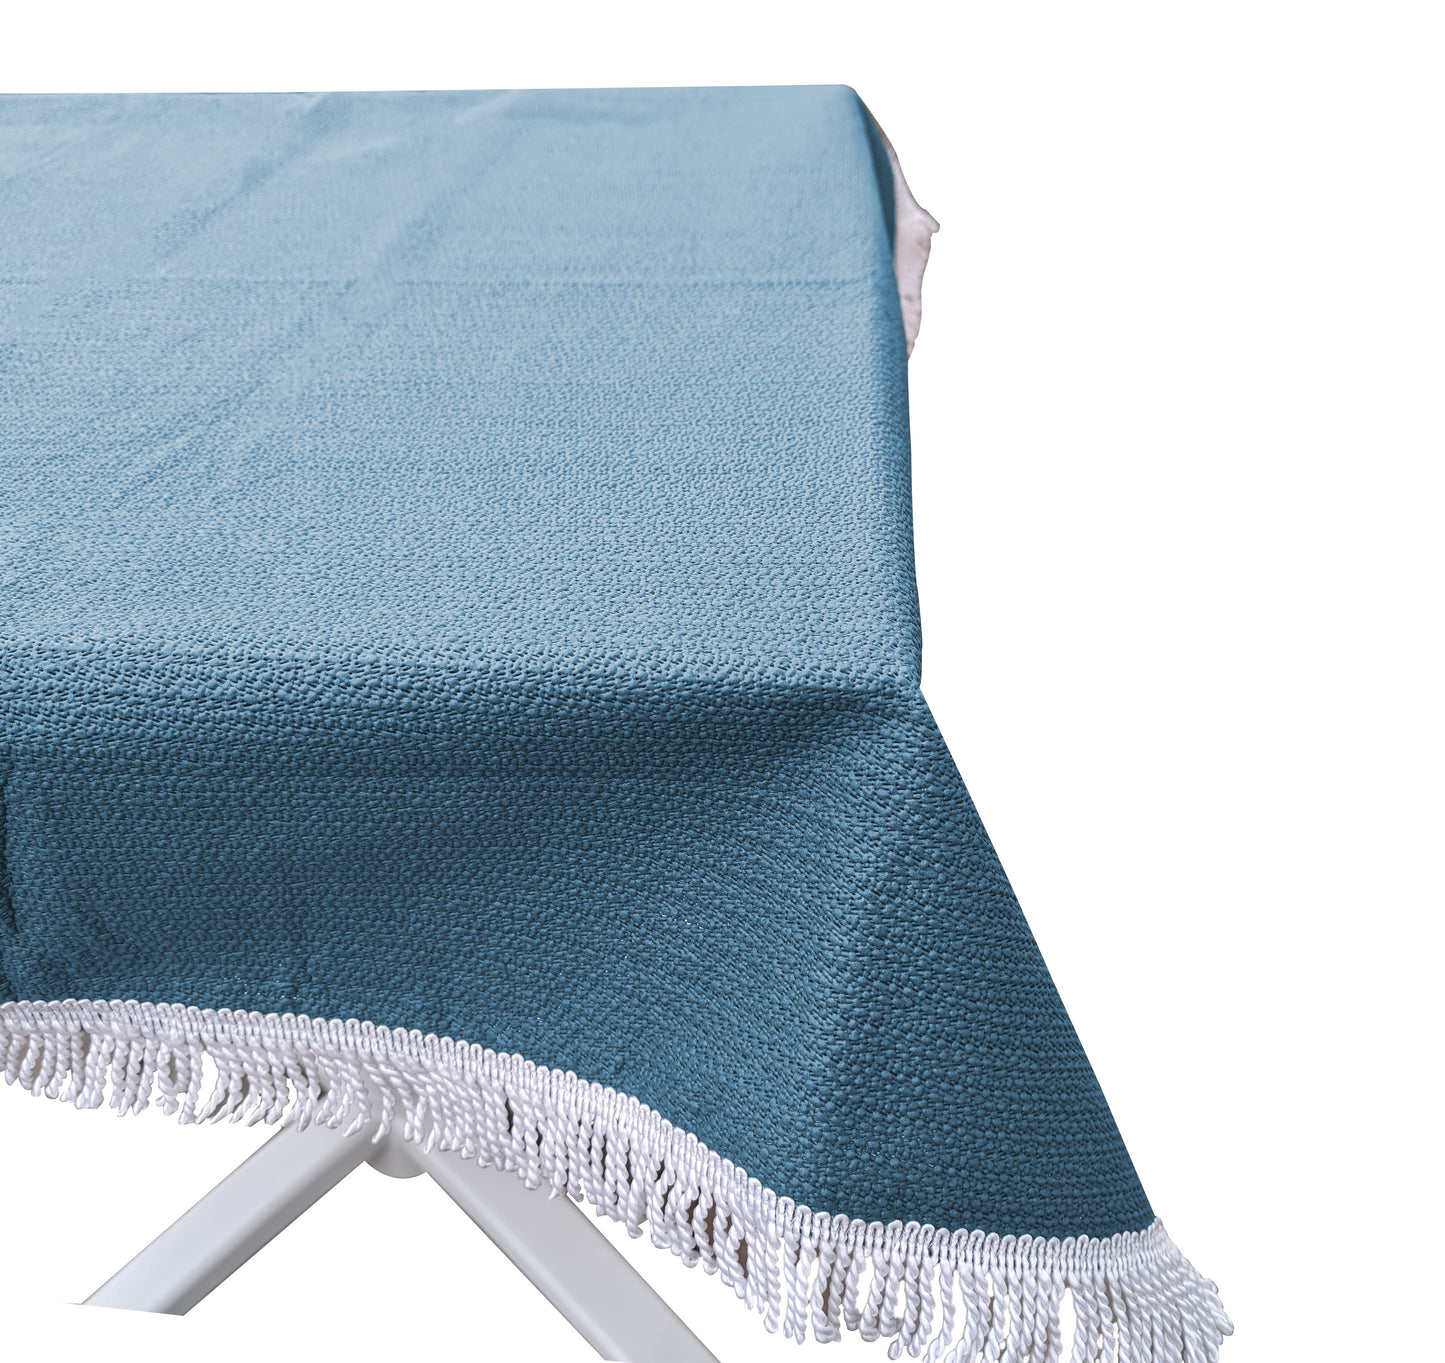 Gartentischdecke 130cm Rund Blau  Weichschaum Witterungsbeständig  Wetterfest geschäumt  Pflegeleicht  abwaschbar